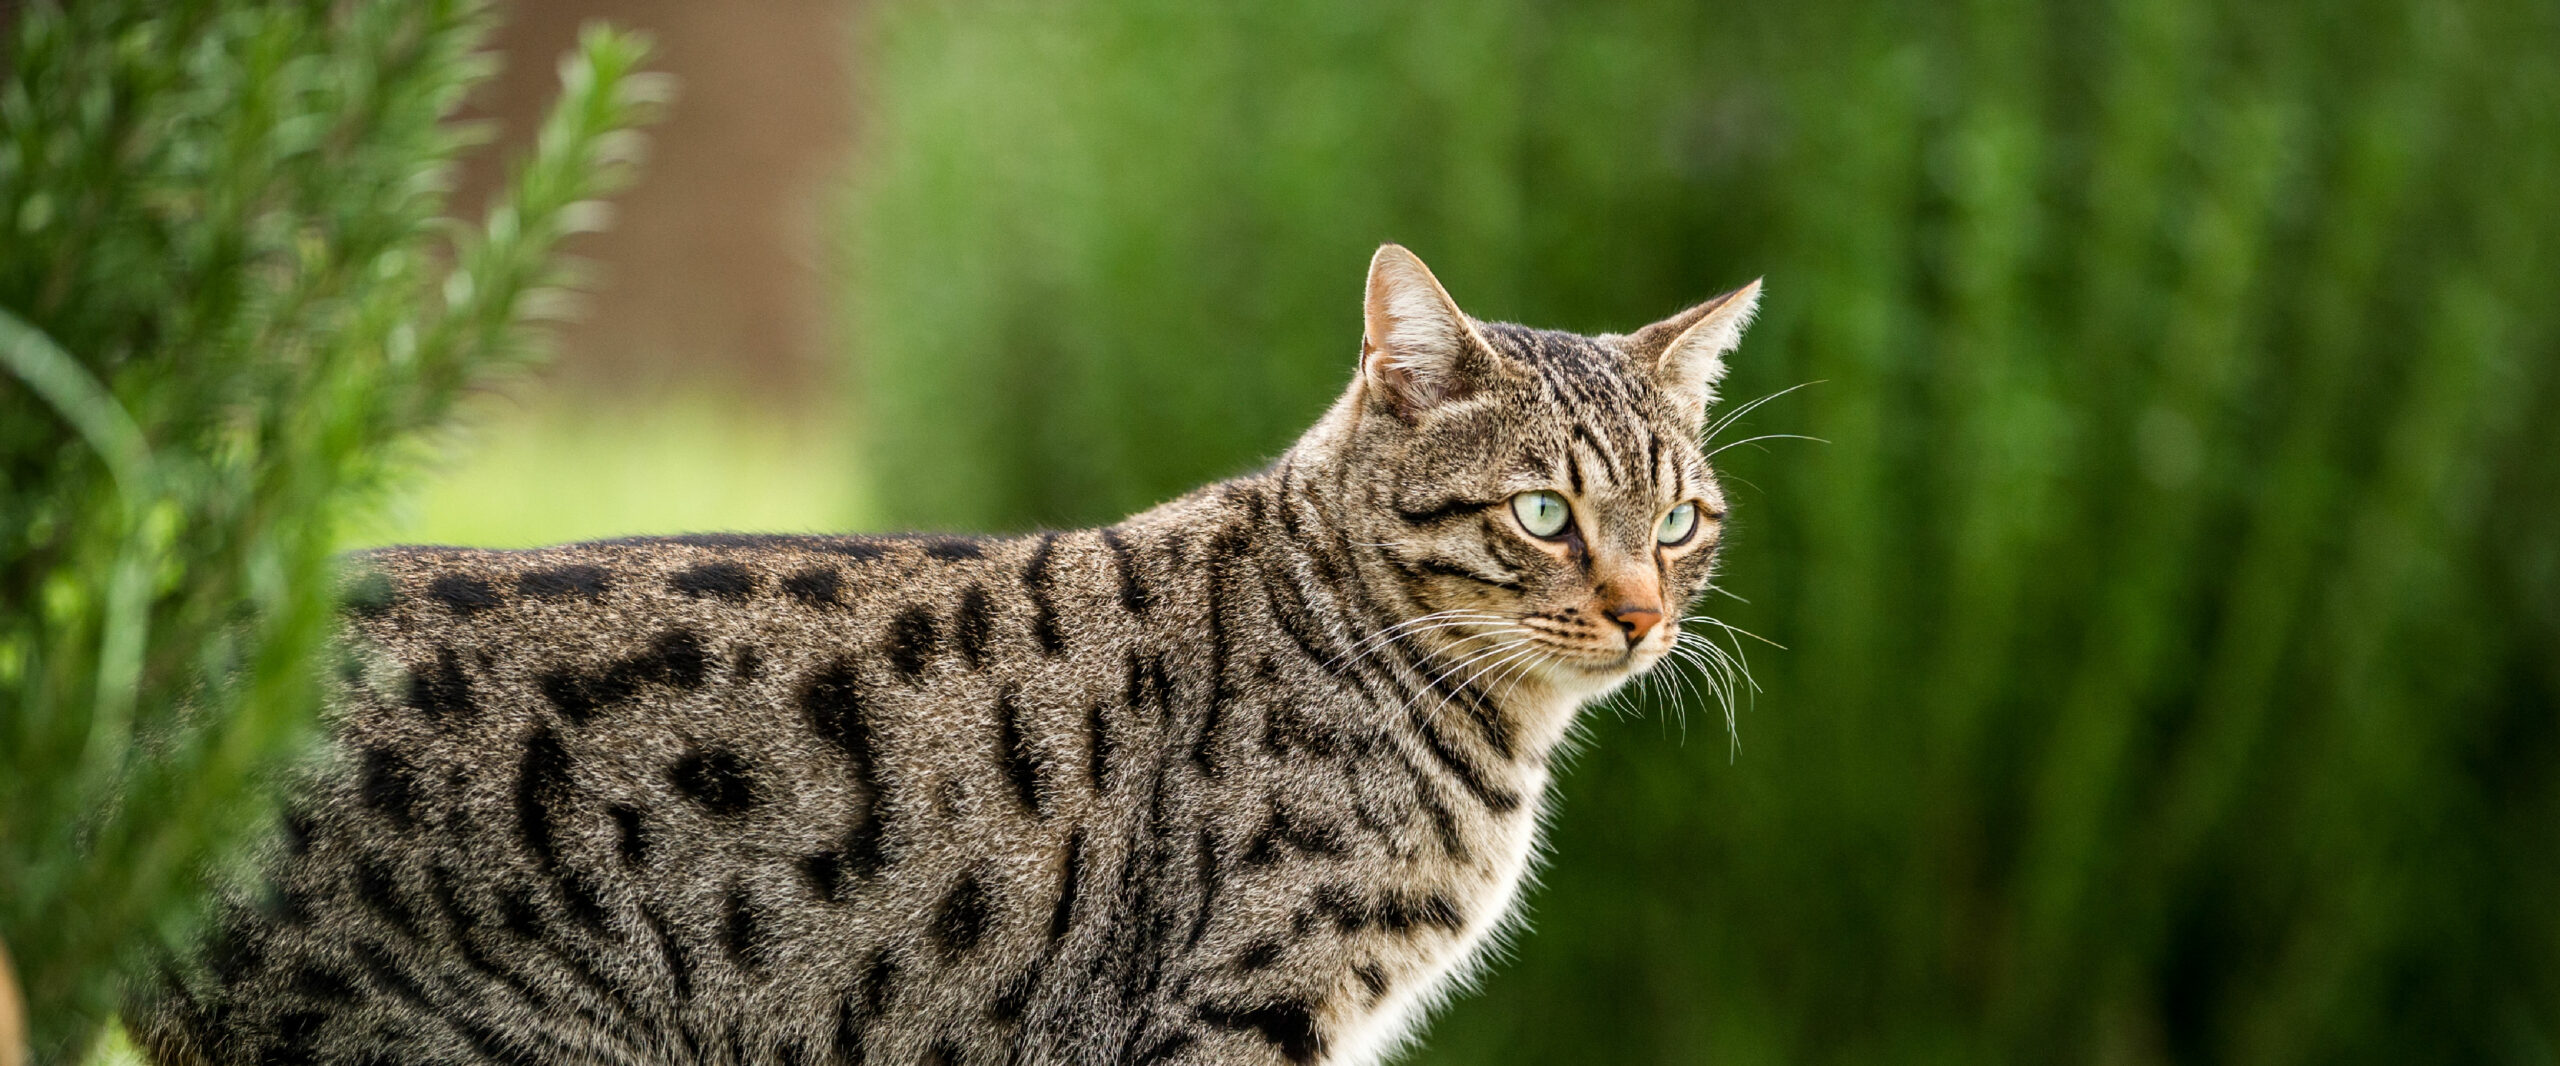 Die Symptome der Urämie können die Lebensqualität betroffener CNE-Katzen beeinträchtigen.  Behandlungstechniken zur Verlangsamung und Verhinderung der Entwicklung einer Urämie werden derzeit untersucht und sollten bei Katzen mit CNE in Betracht gezogen werden.